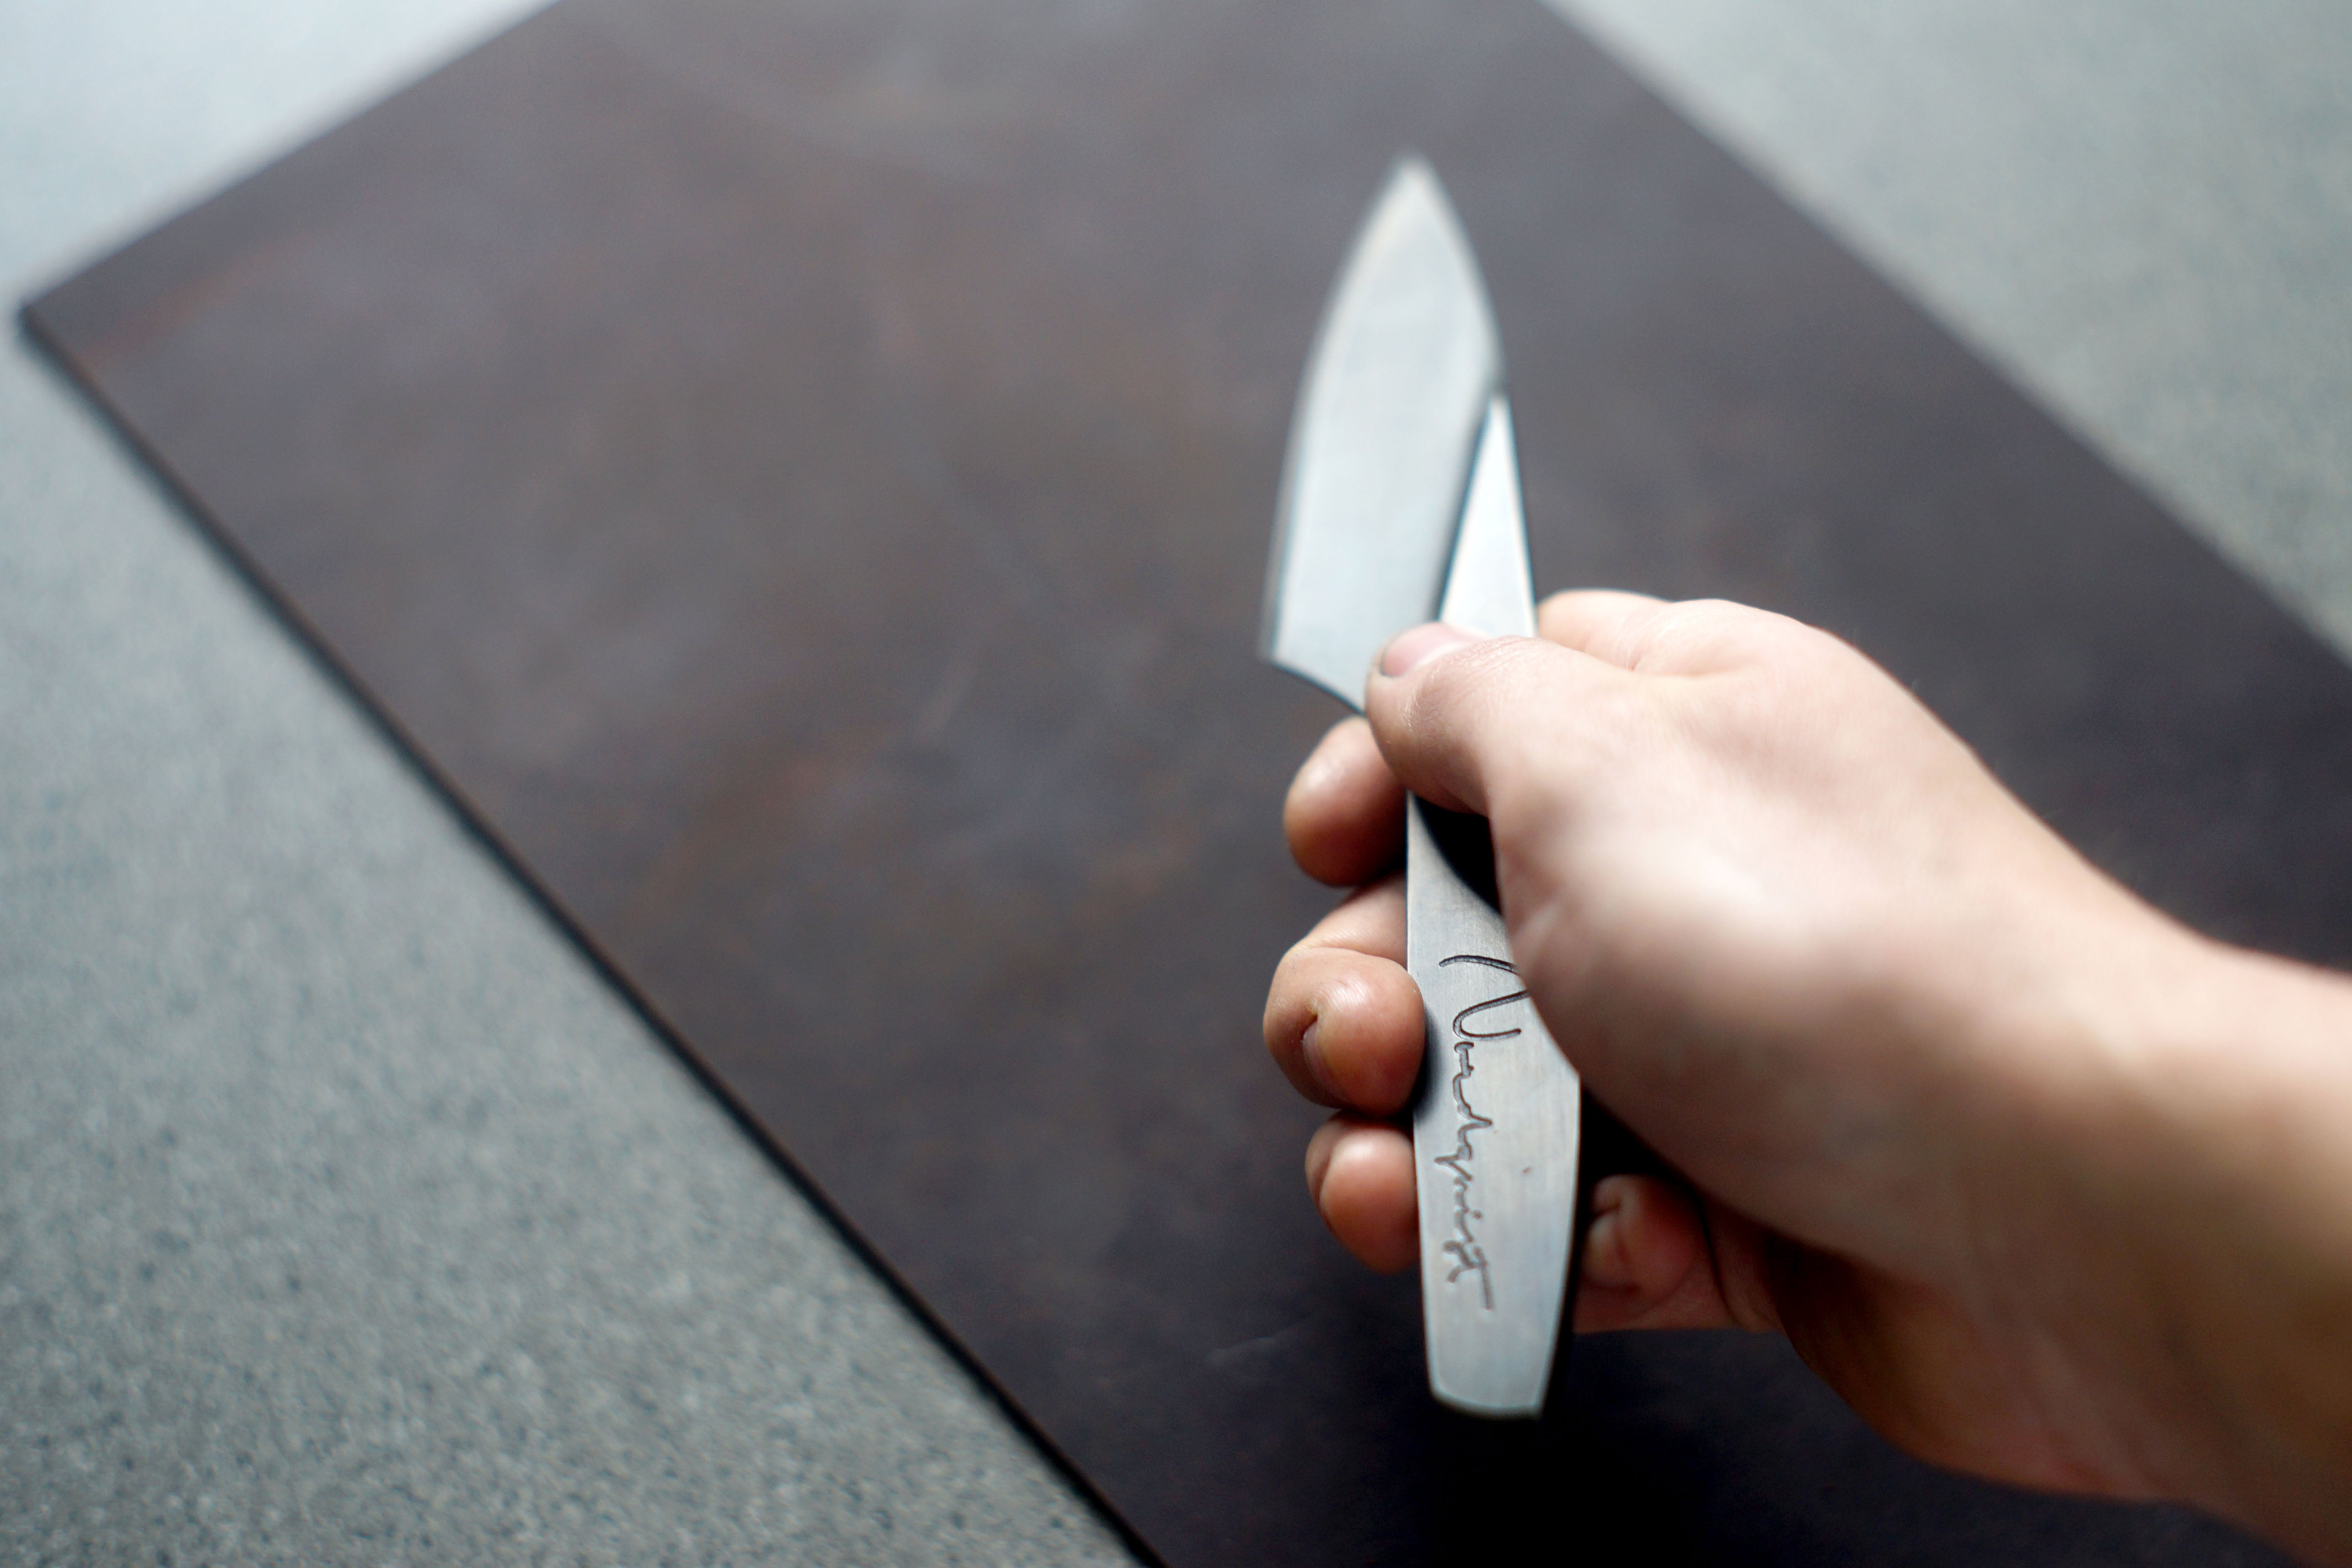 Monolithic Paring Knife